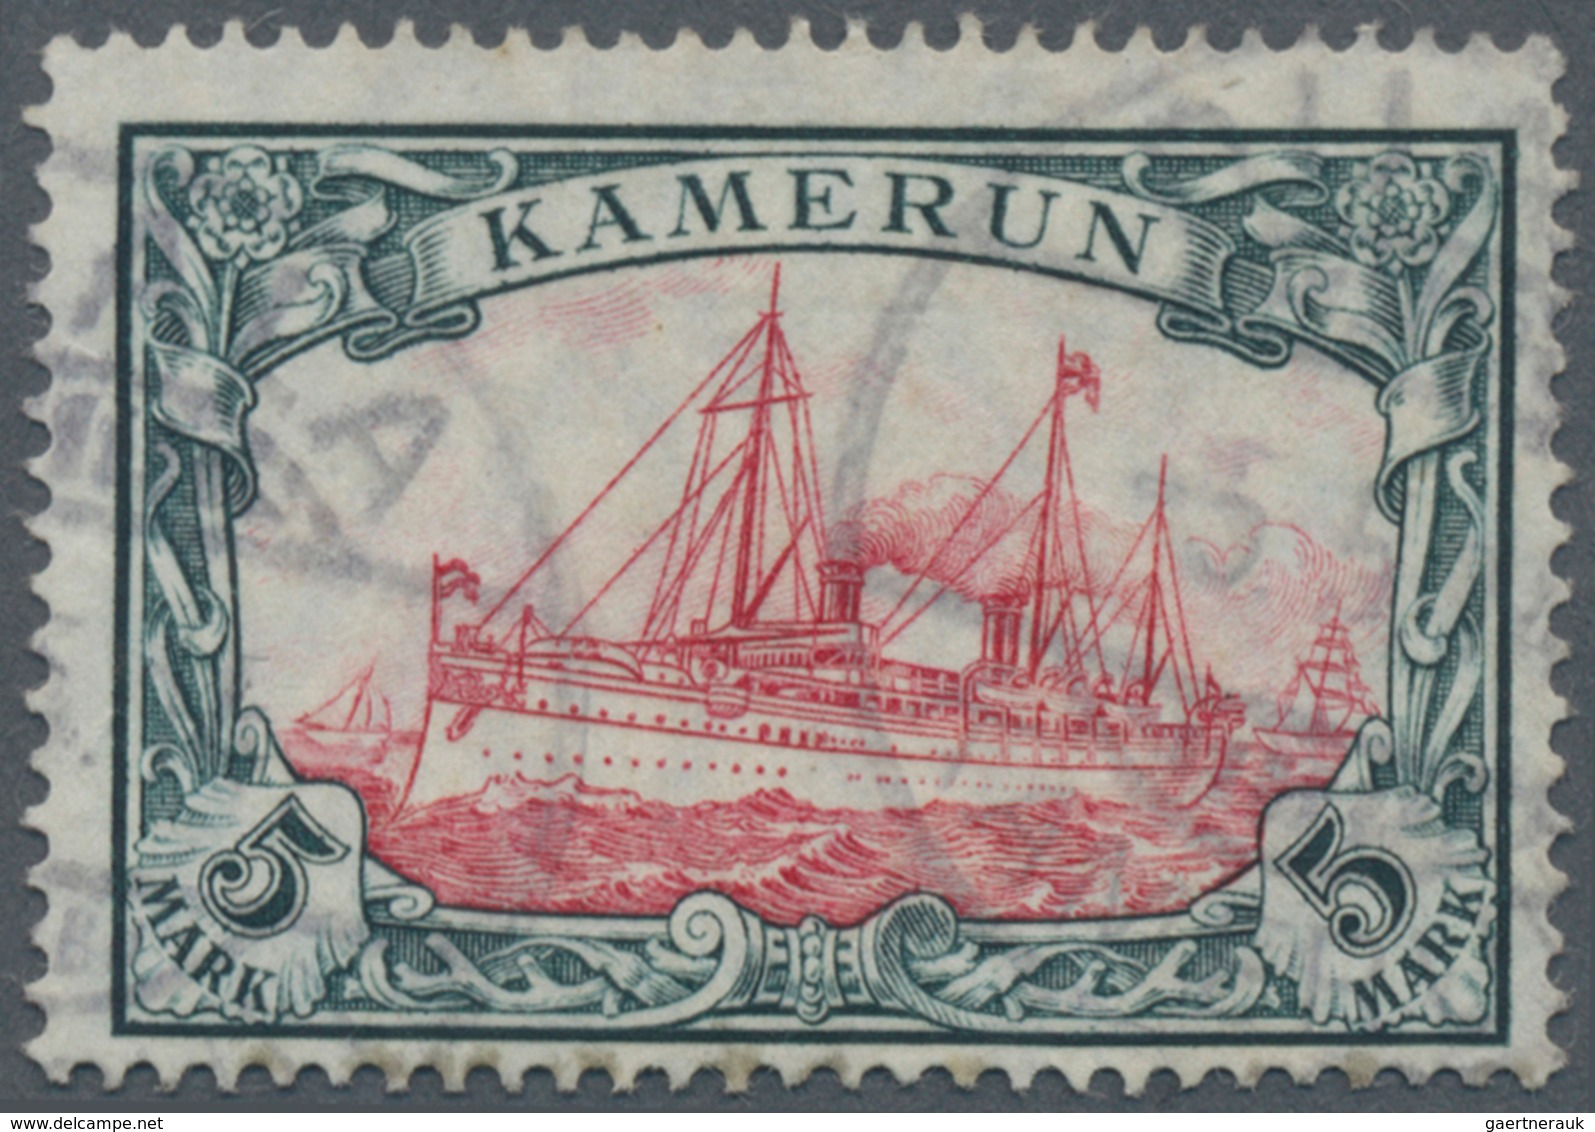 Deutsche Kolonien - Kamerun: 1913, 5 M. Kaiseryacht Im Friedensdruck Mit Wasserzeichen, Sauber Geste - Cameroun